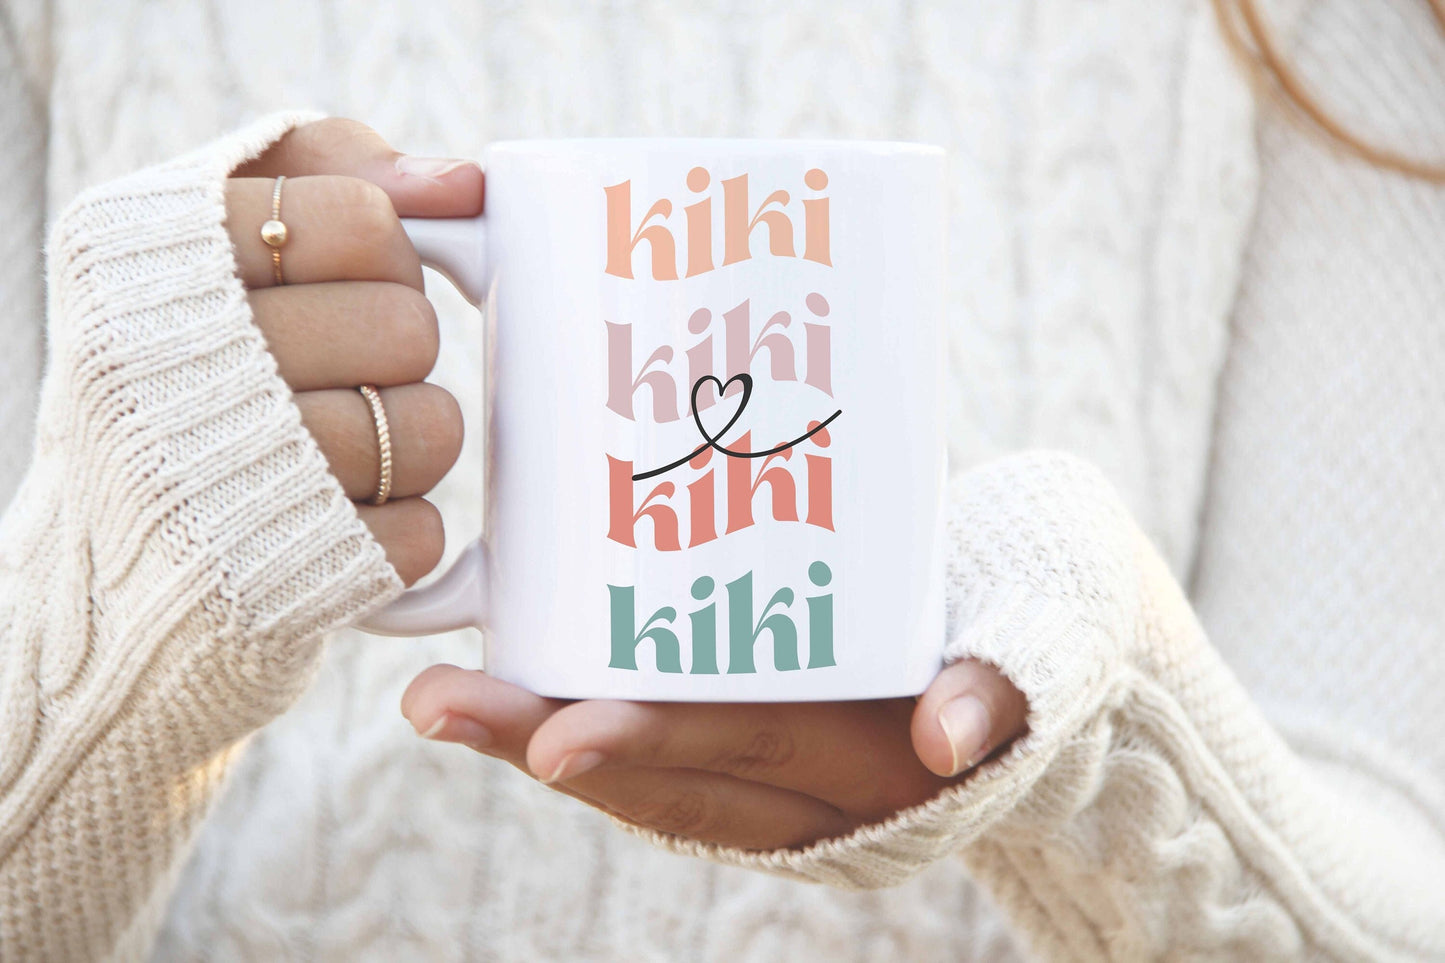 Kiki Mug | Kiki Gifts | Birthday Gift for Kiki | Christmas Gift for New Kiki | Favorite Mug | Coffee Mug | 15oz mug | 11oz mug